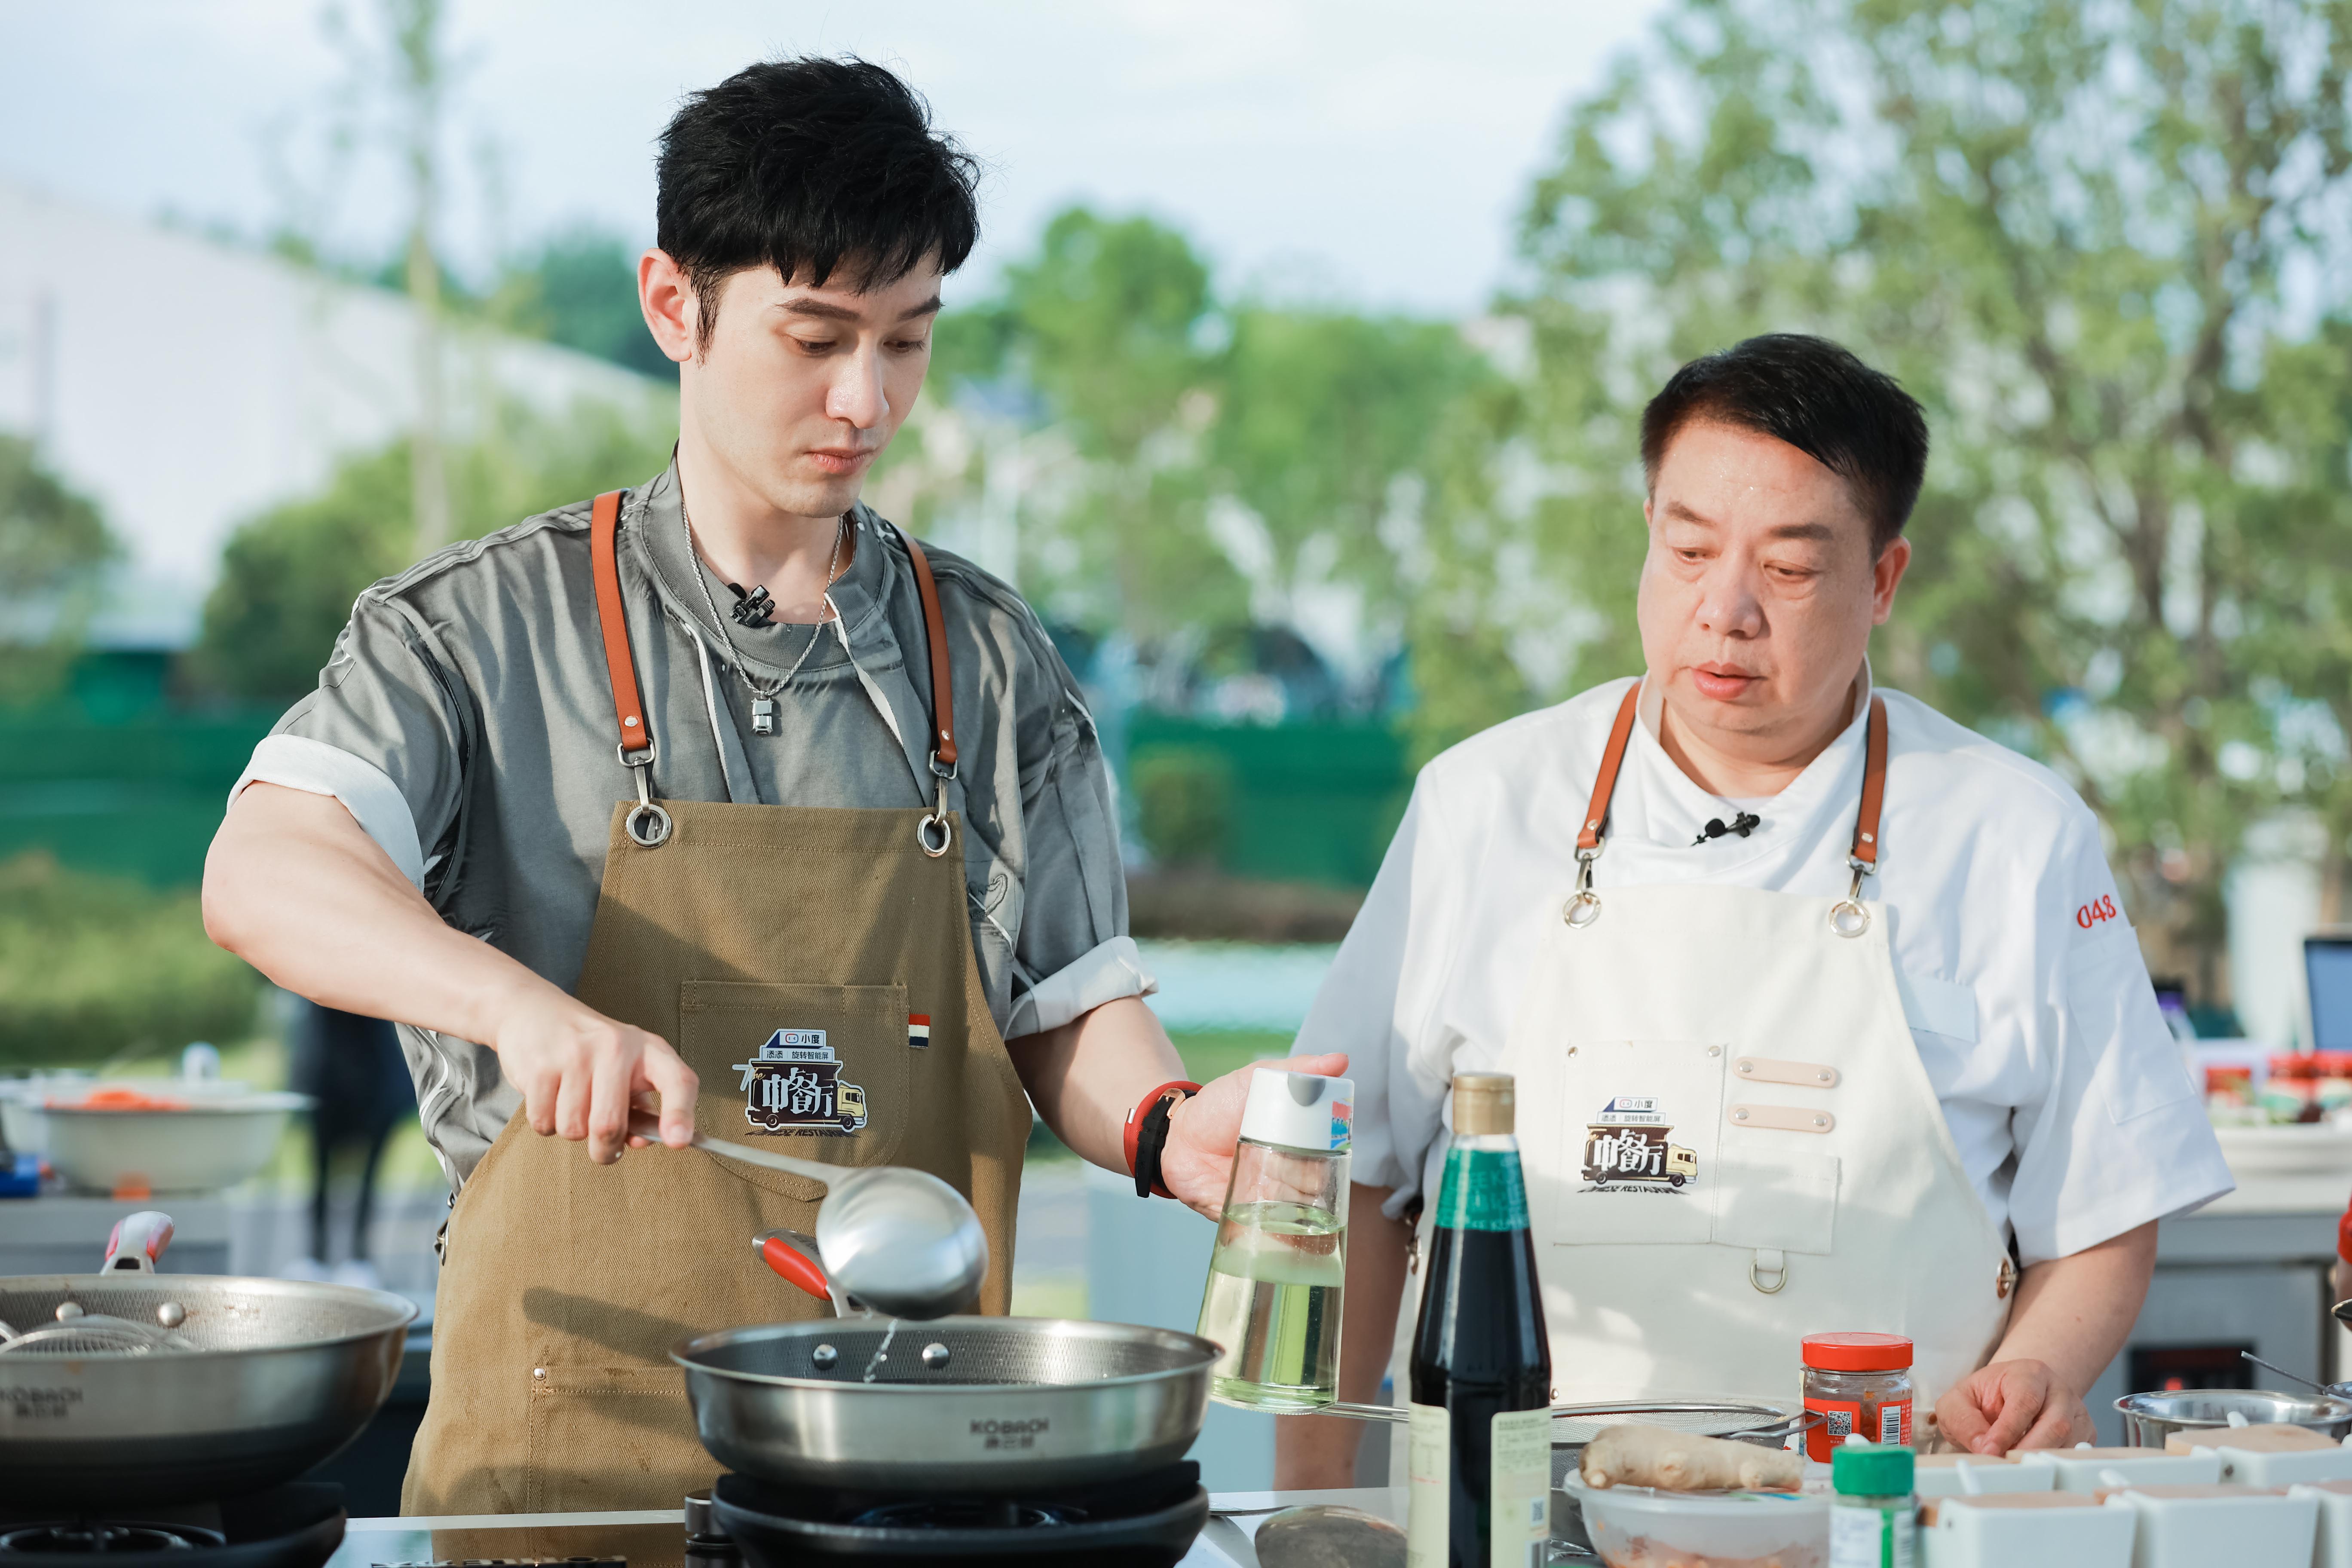 湖南卫视《中餐厅5》首播收视第一创佳绩 合伙人晋升大厨看点多多